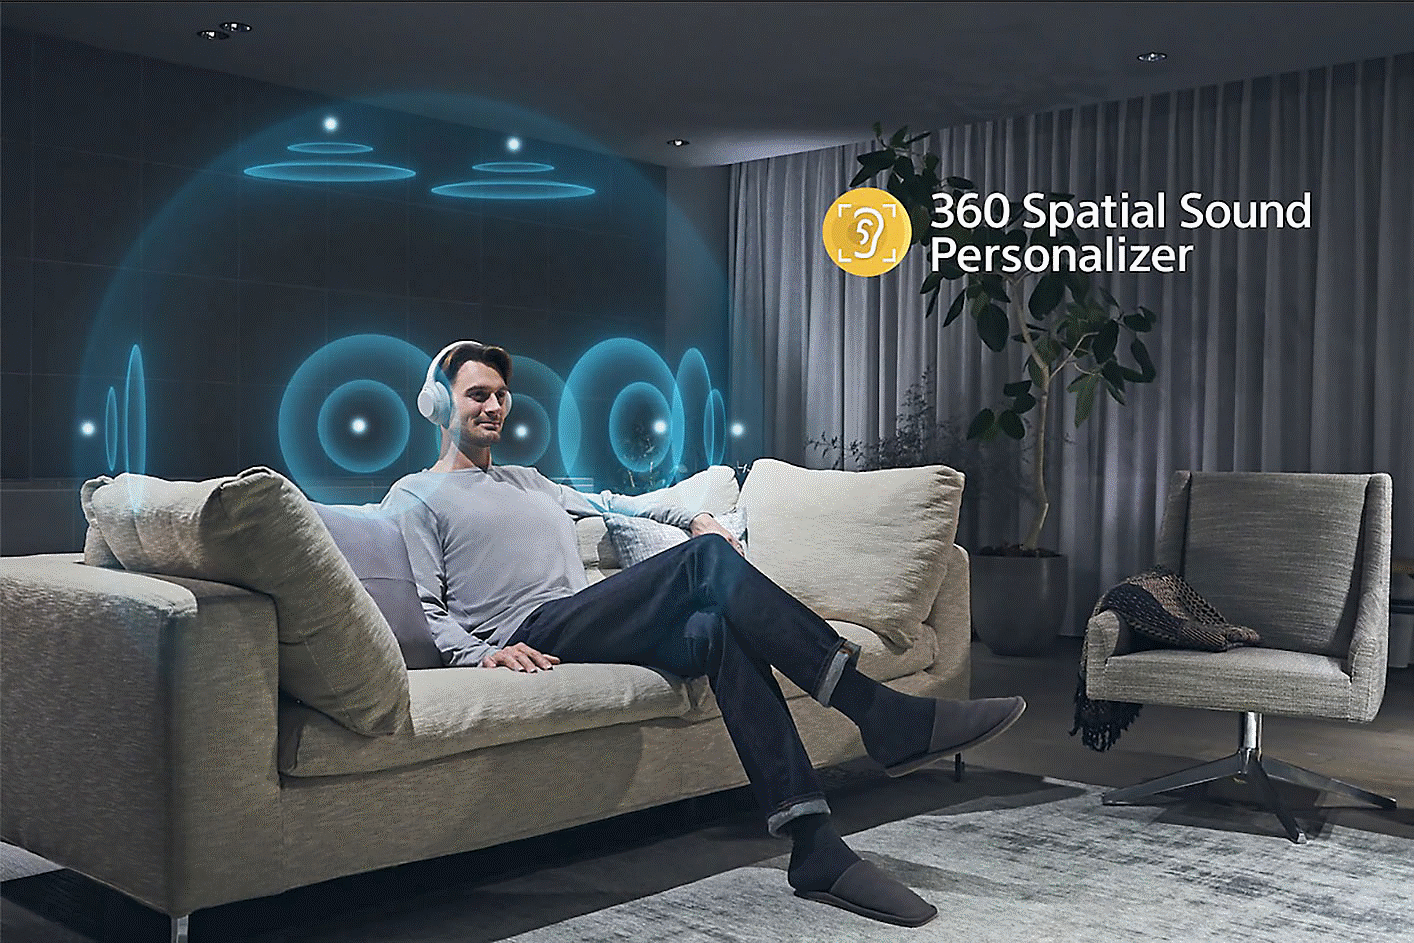 Imagen de una persona en un sofá usando audífonos, rodeada de círculos concéntricos y el logotipo de Sonido espacial 360 a la derecha